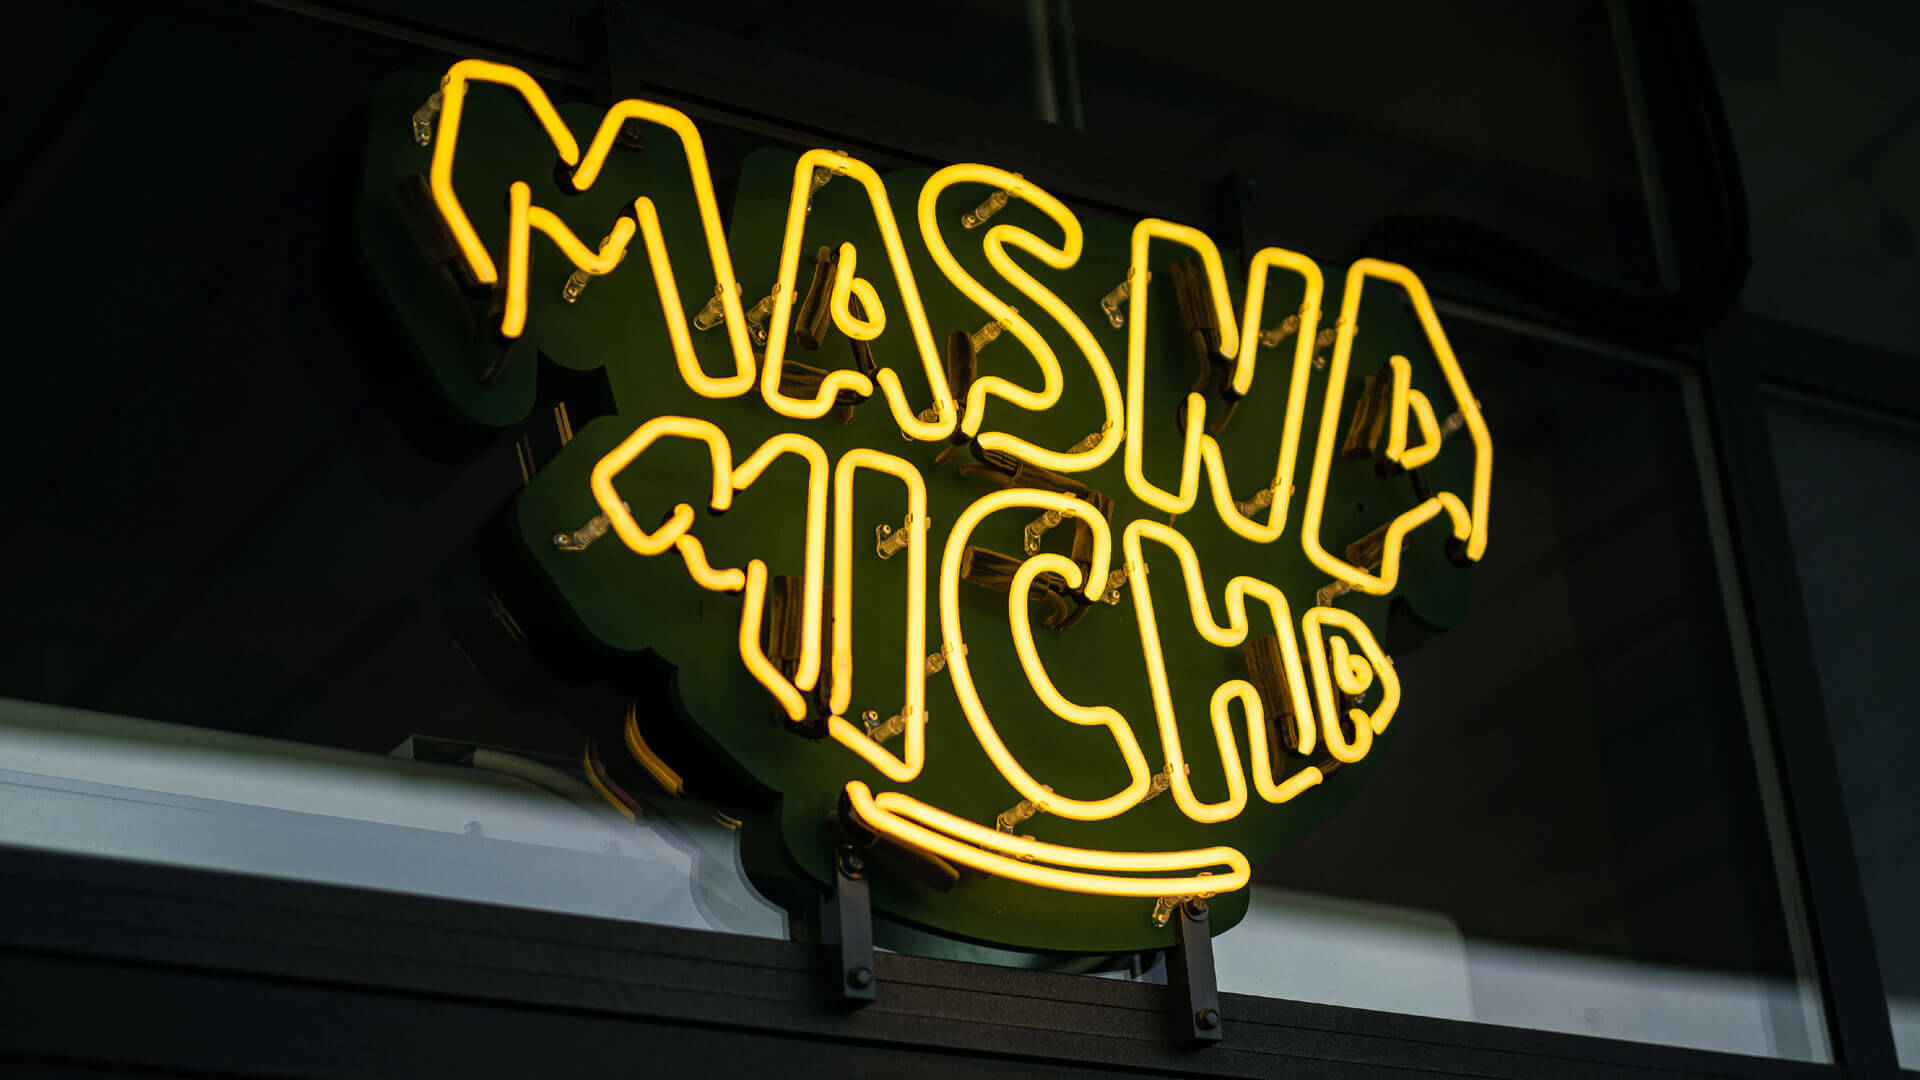 Masna Micha - Cartel de neón del restaurante Masna Micha en Gdansk, en el exterior del local.